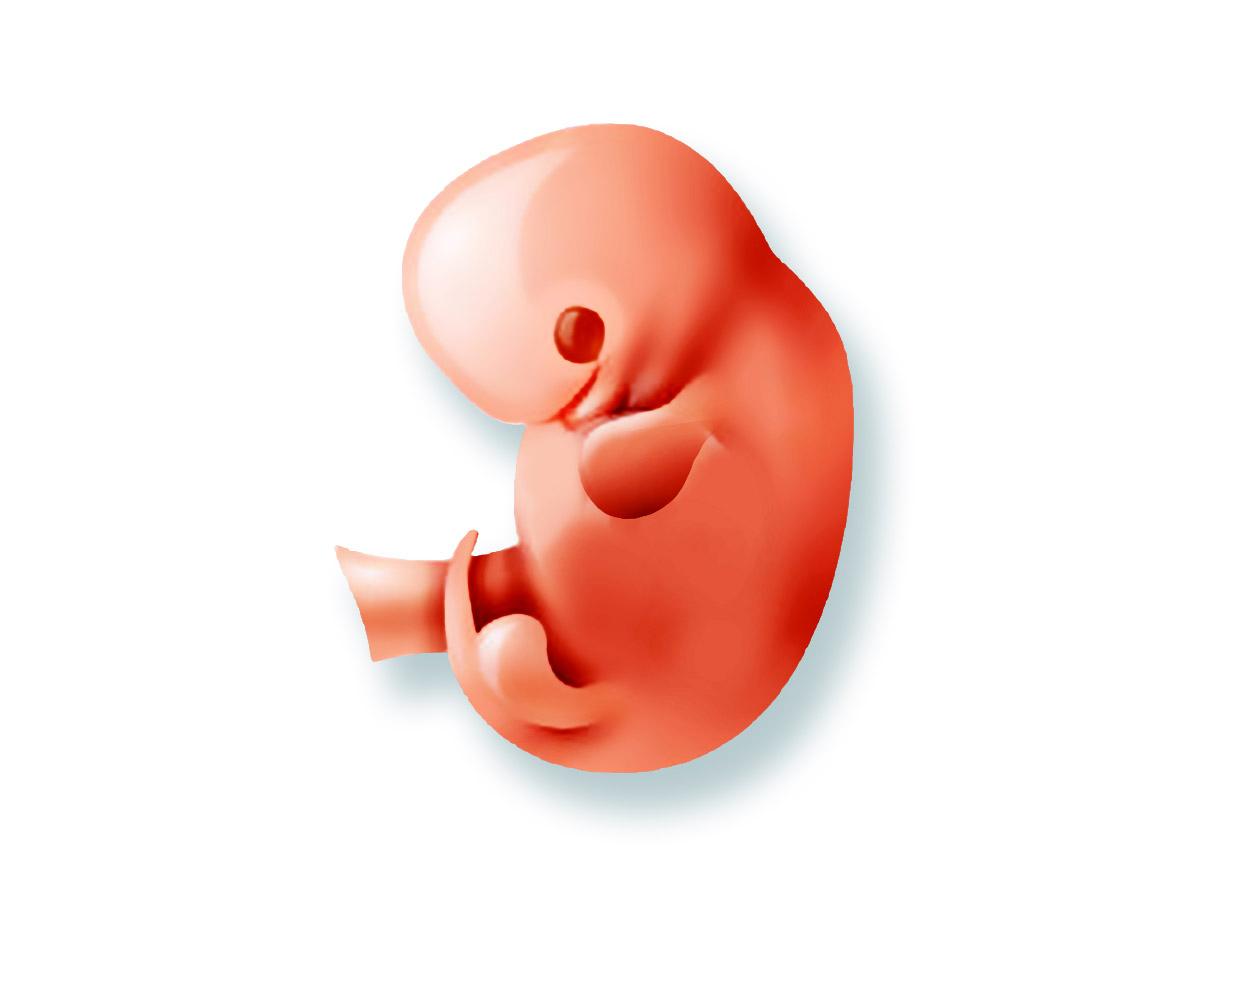 Gravid i vecka 12:  Fostret kan röra både armar och ben och ser ut som en liten människa. 